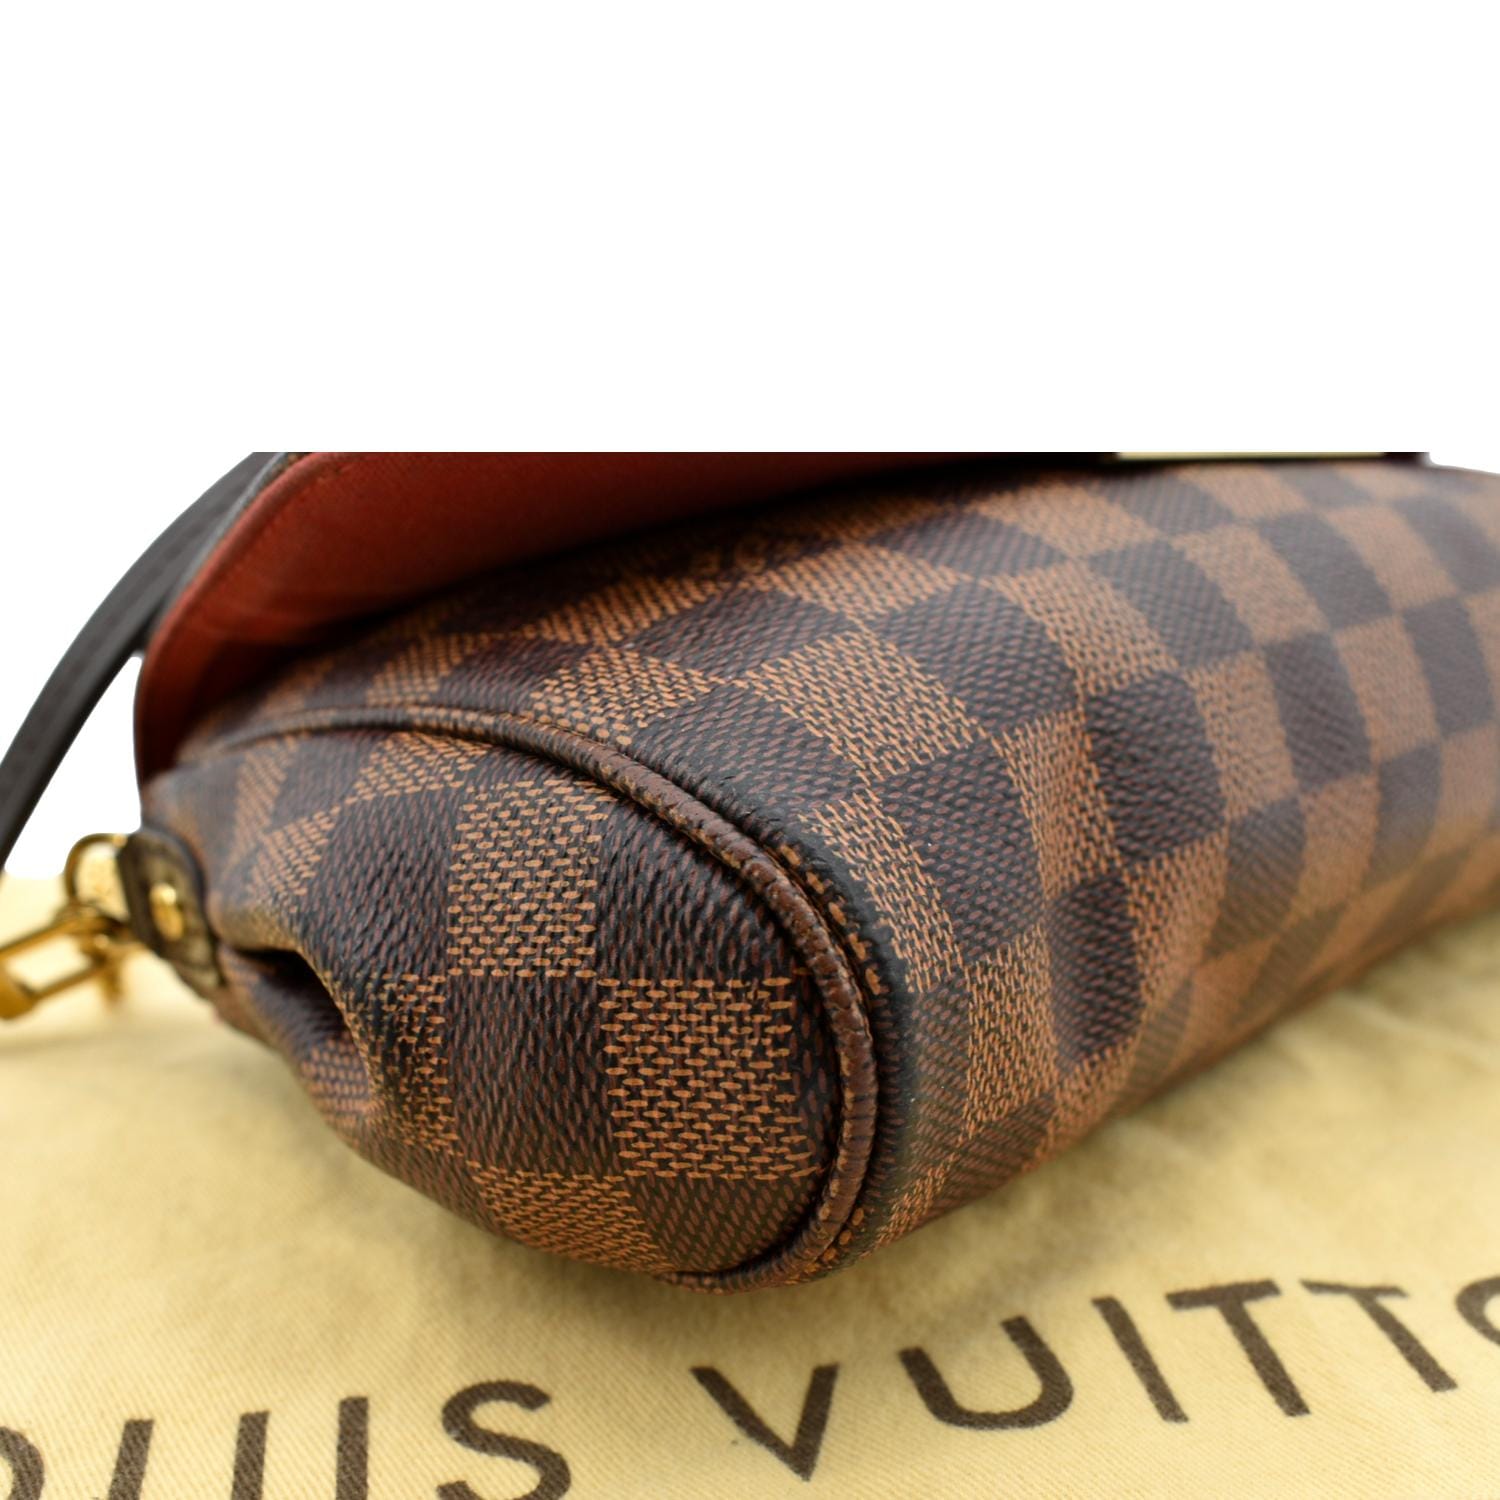 Authentic Louis Vuitton Damier Ebene Canvas Favorite MM Bag